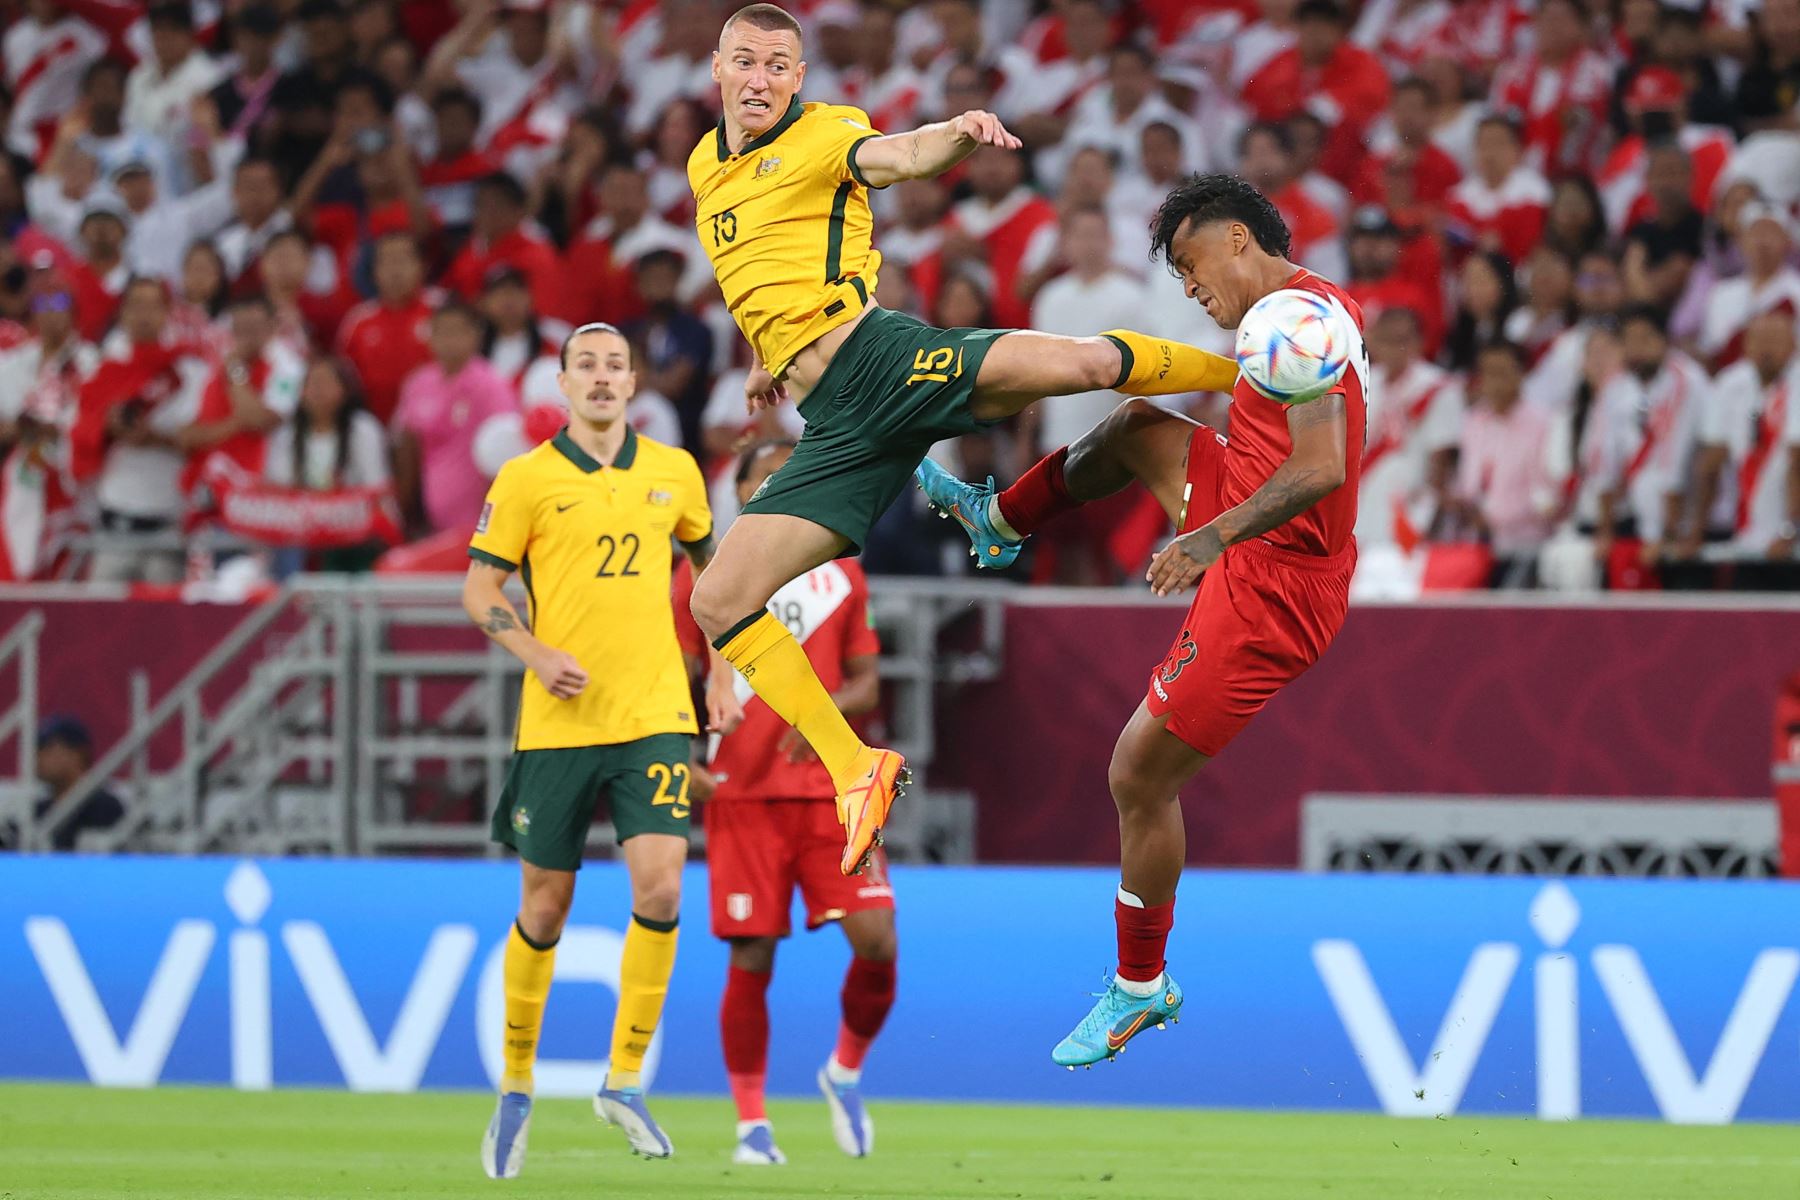 El delantero de Australia Mitchell Duke  disputa el  balón con el jugador de Perú Renato Tapia  durante el partido de play-offs entre confederaciones de la Copa Mundial de la FIFA 2022 entre Australia y Perú.
Foto: AFP